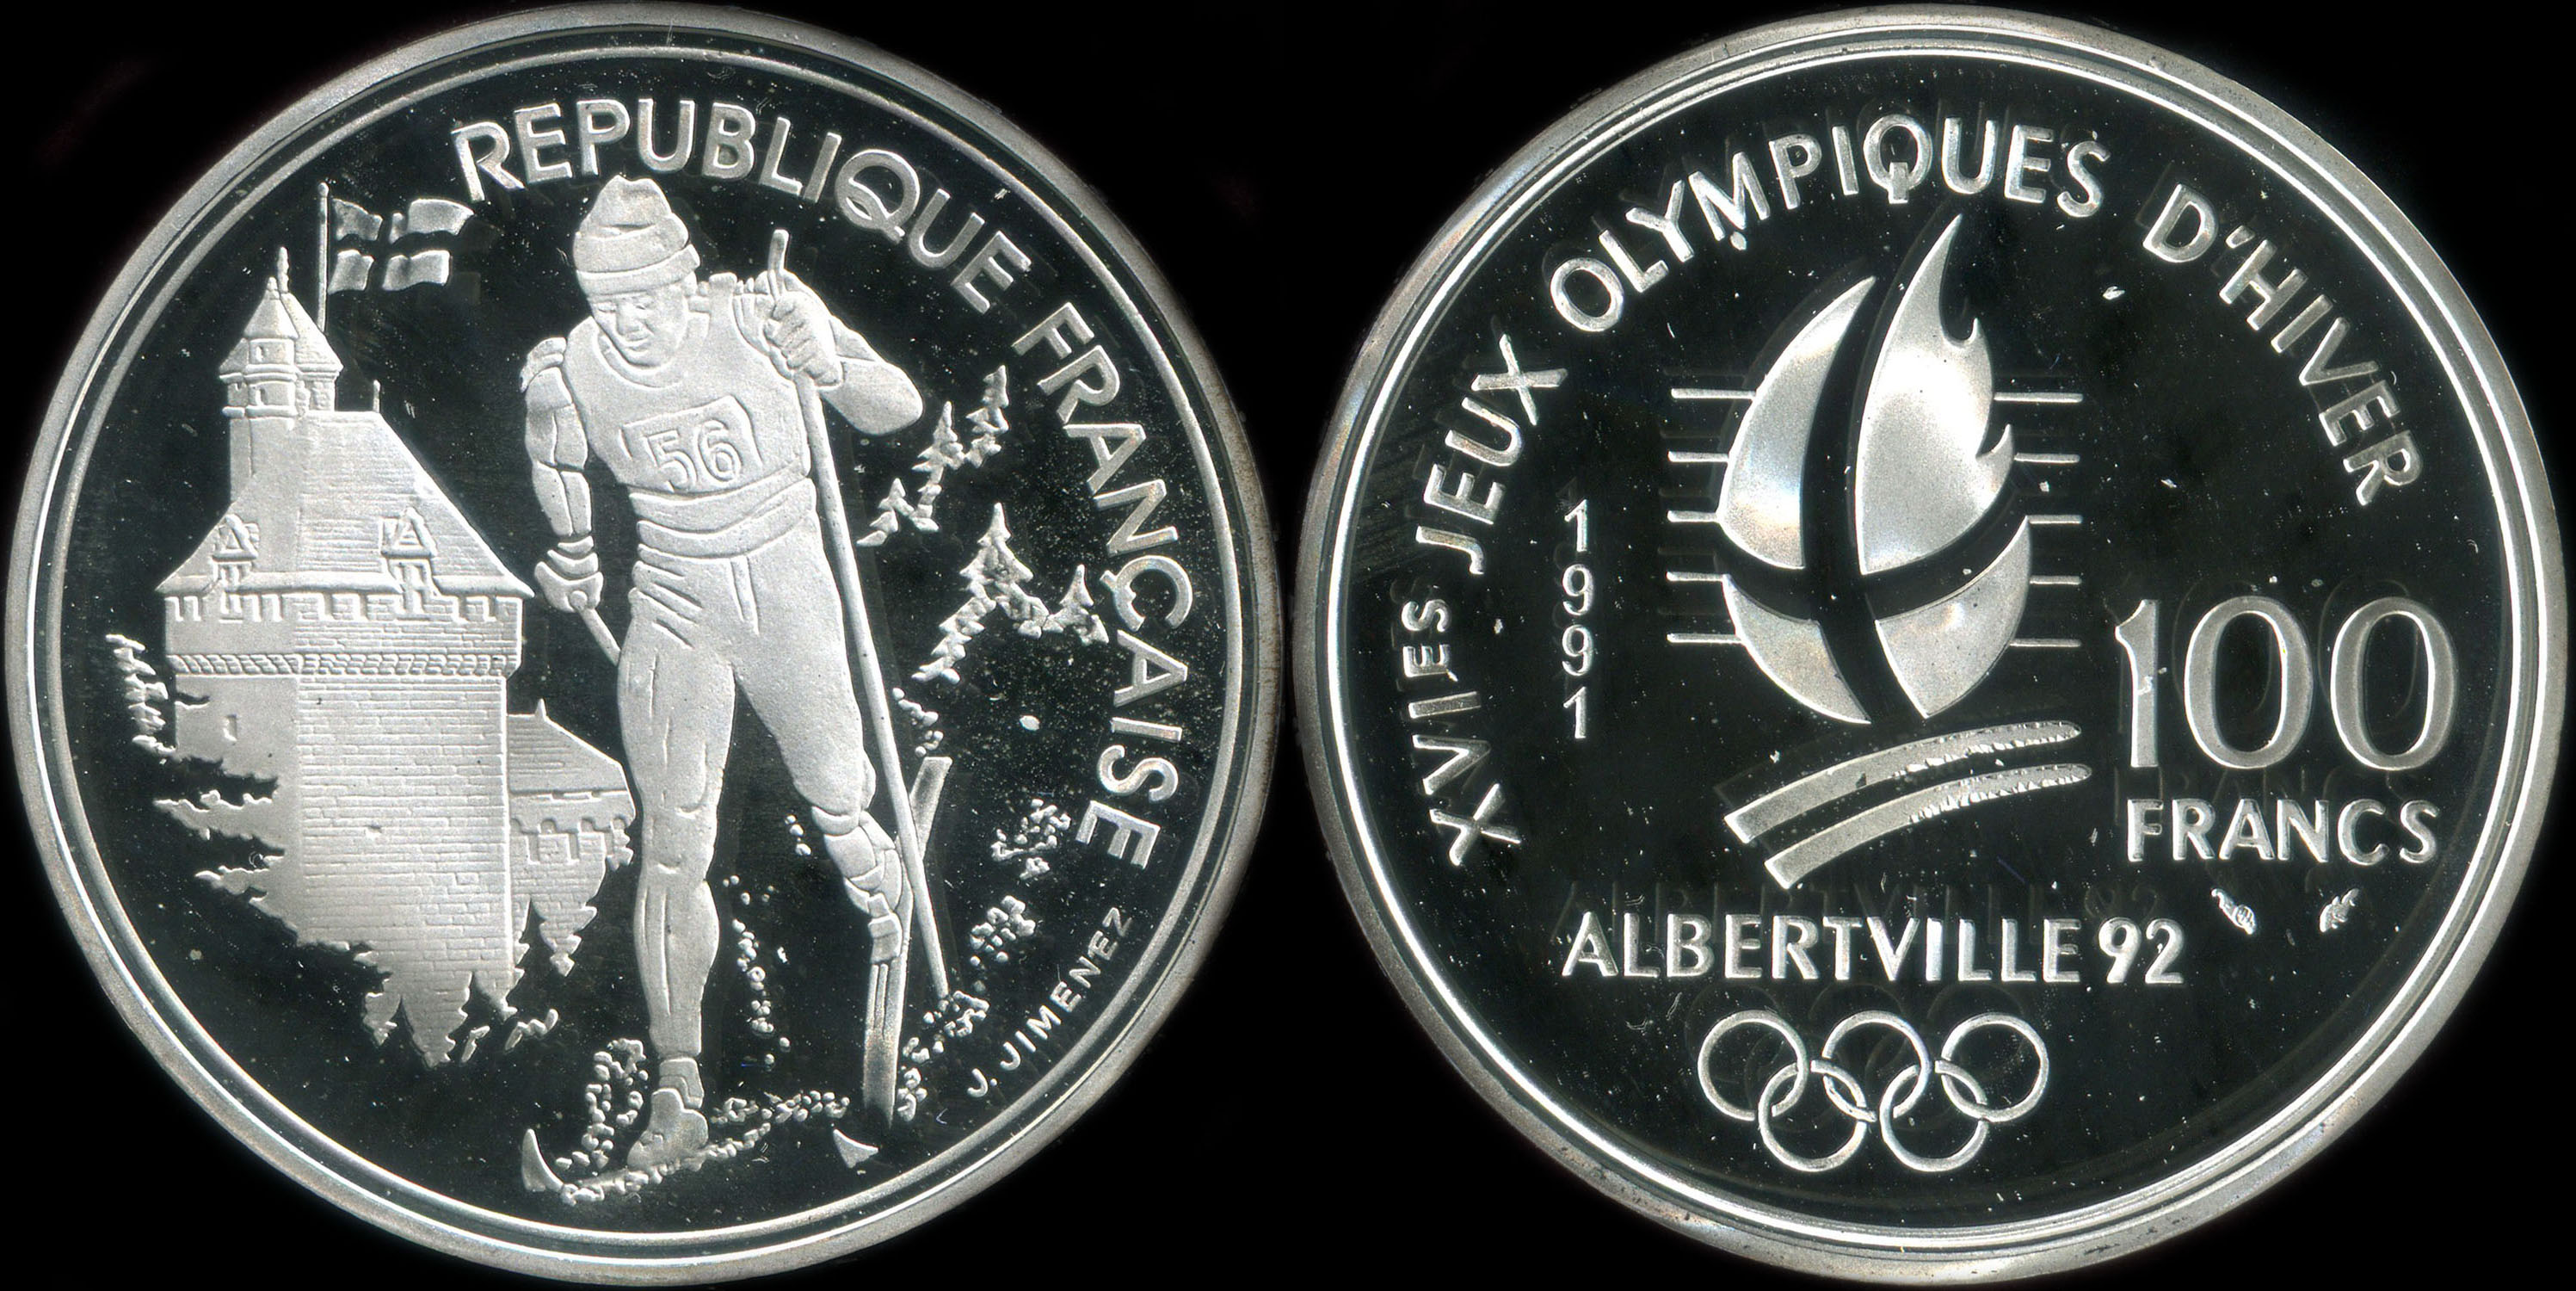 Pièce de 100 francs 1991 - XVIes Jeux Olympiques d'Hiver - Albertville 92 - Ski de Fond - Château des Ducs de Savoie